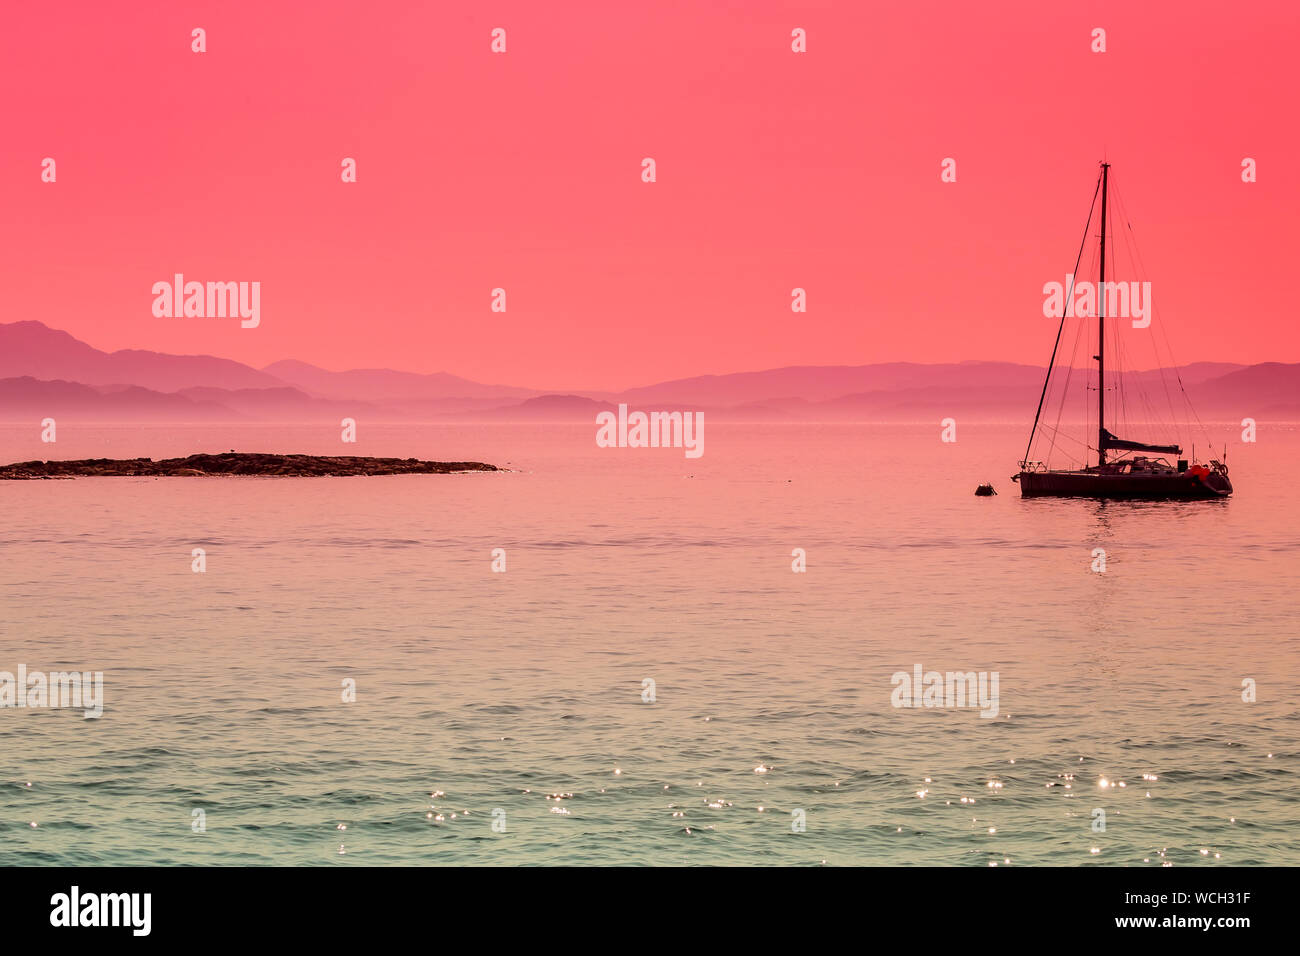 Insel Eigg, Inneren Hebriden in Schottland. Friedliche, ruhige Bild von einem Boot aus der kleinen Hebriden Insel Eigg, Schottland günstig. Konzept: Serenity Stockfoto